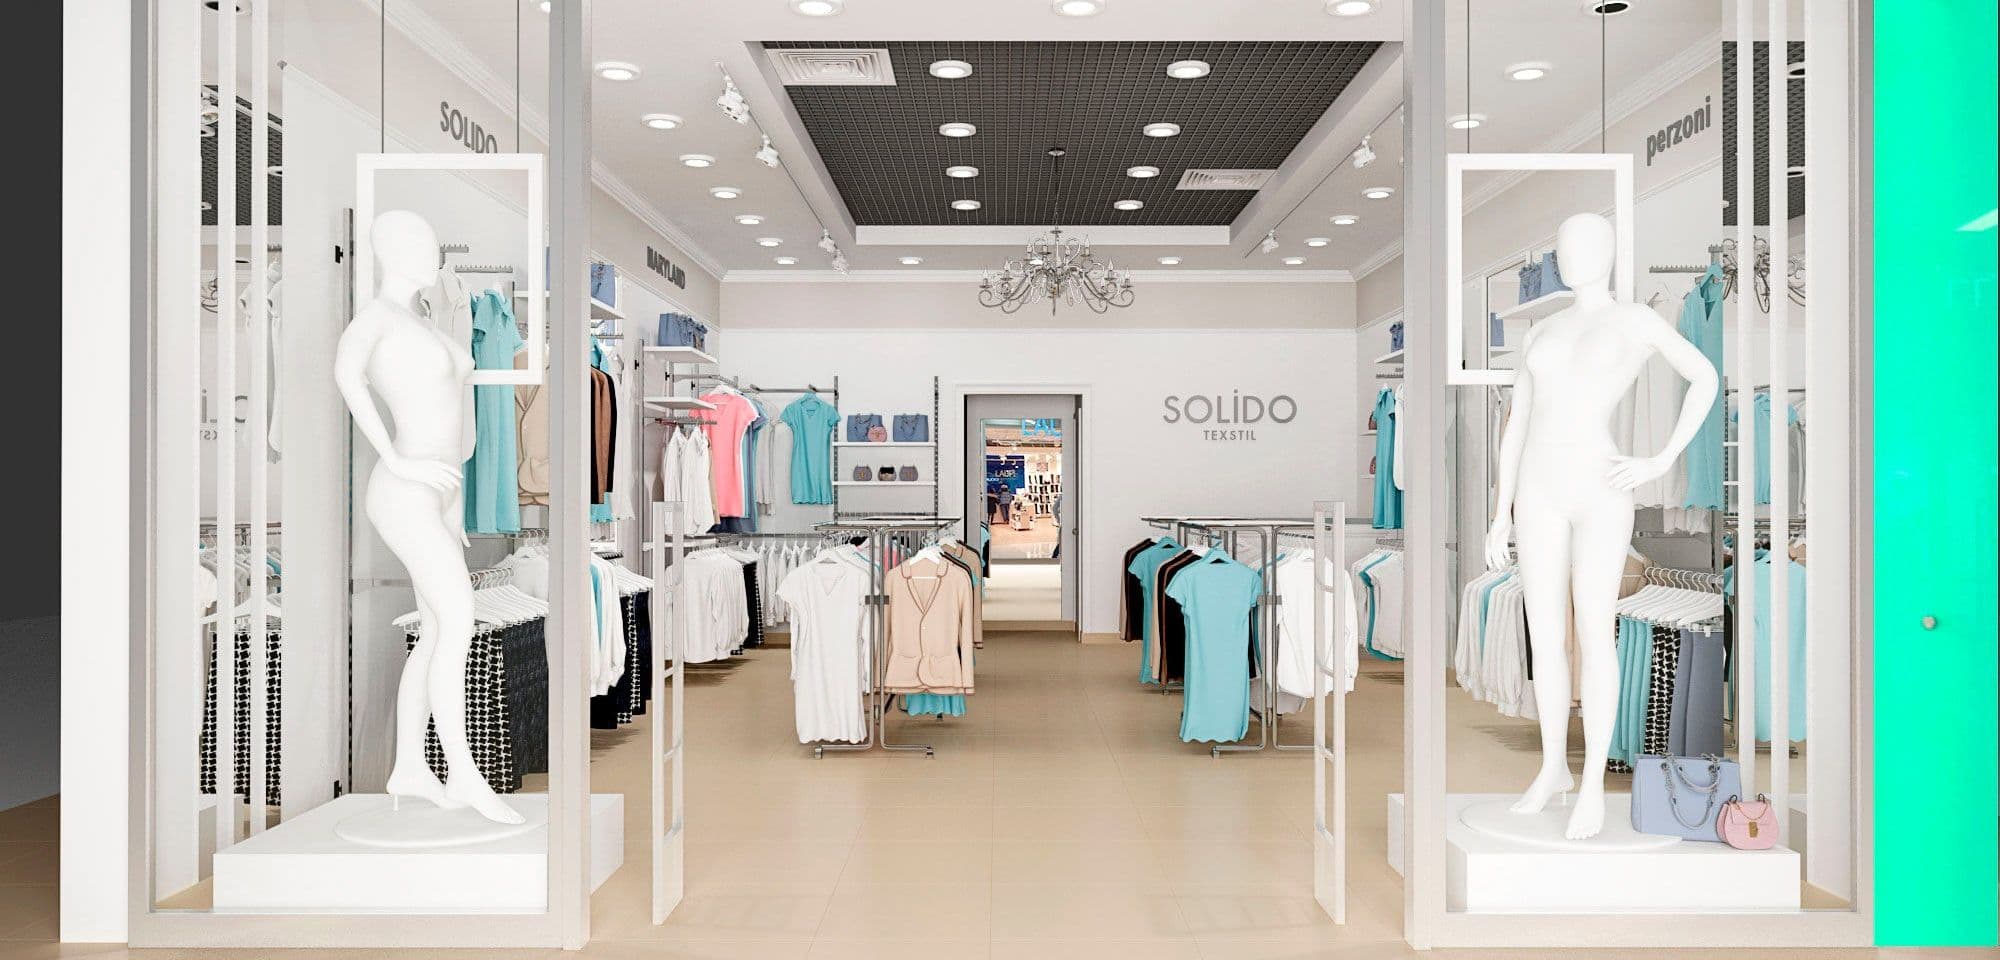 Дизайн магазина одежды в ТЦ Тау Галерея в легком классическом стиле, в светлых тонах, с большой люстрой и зеркалами, вид со стороны витрины